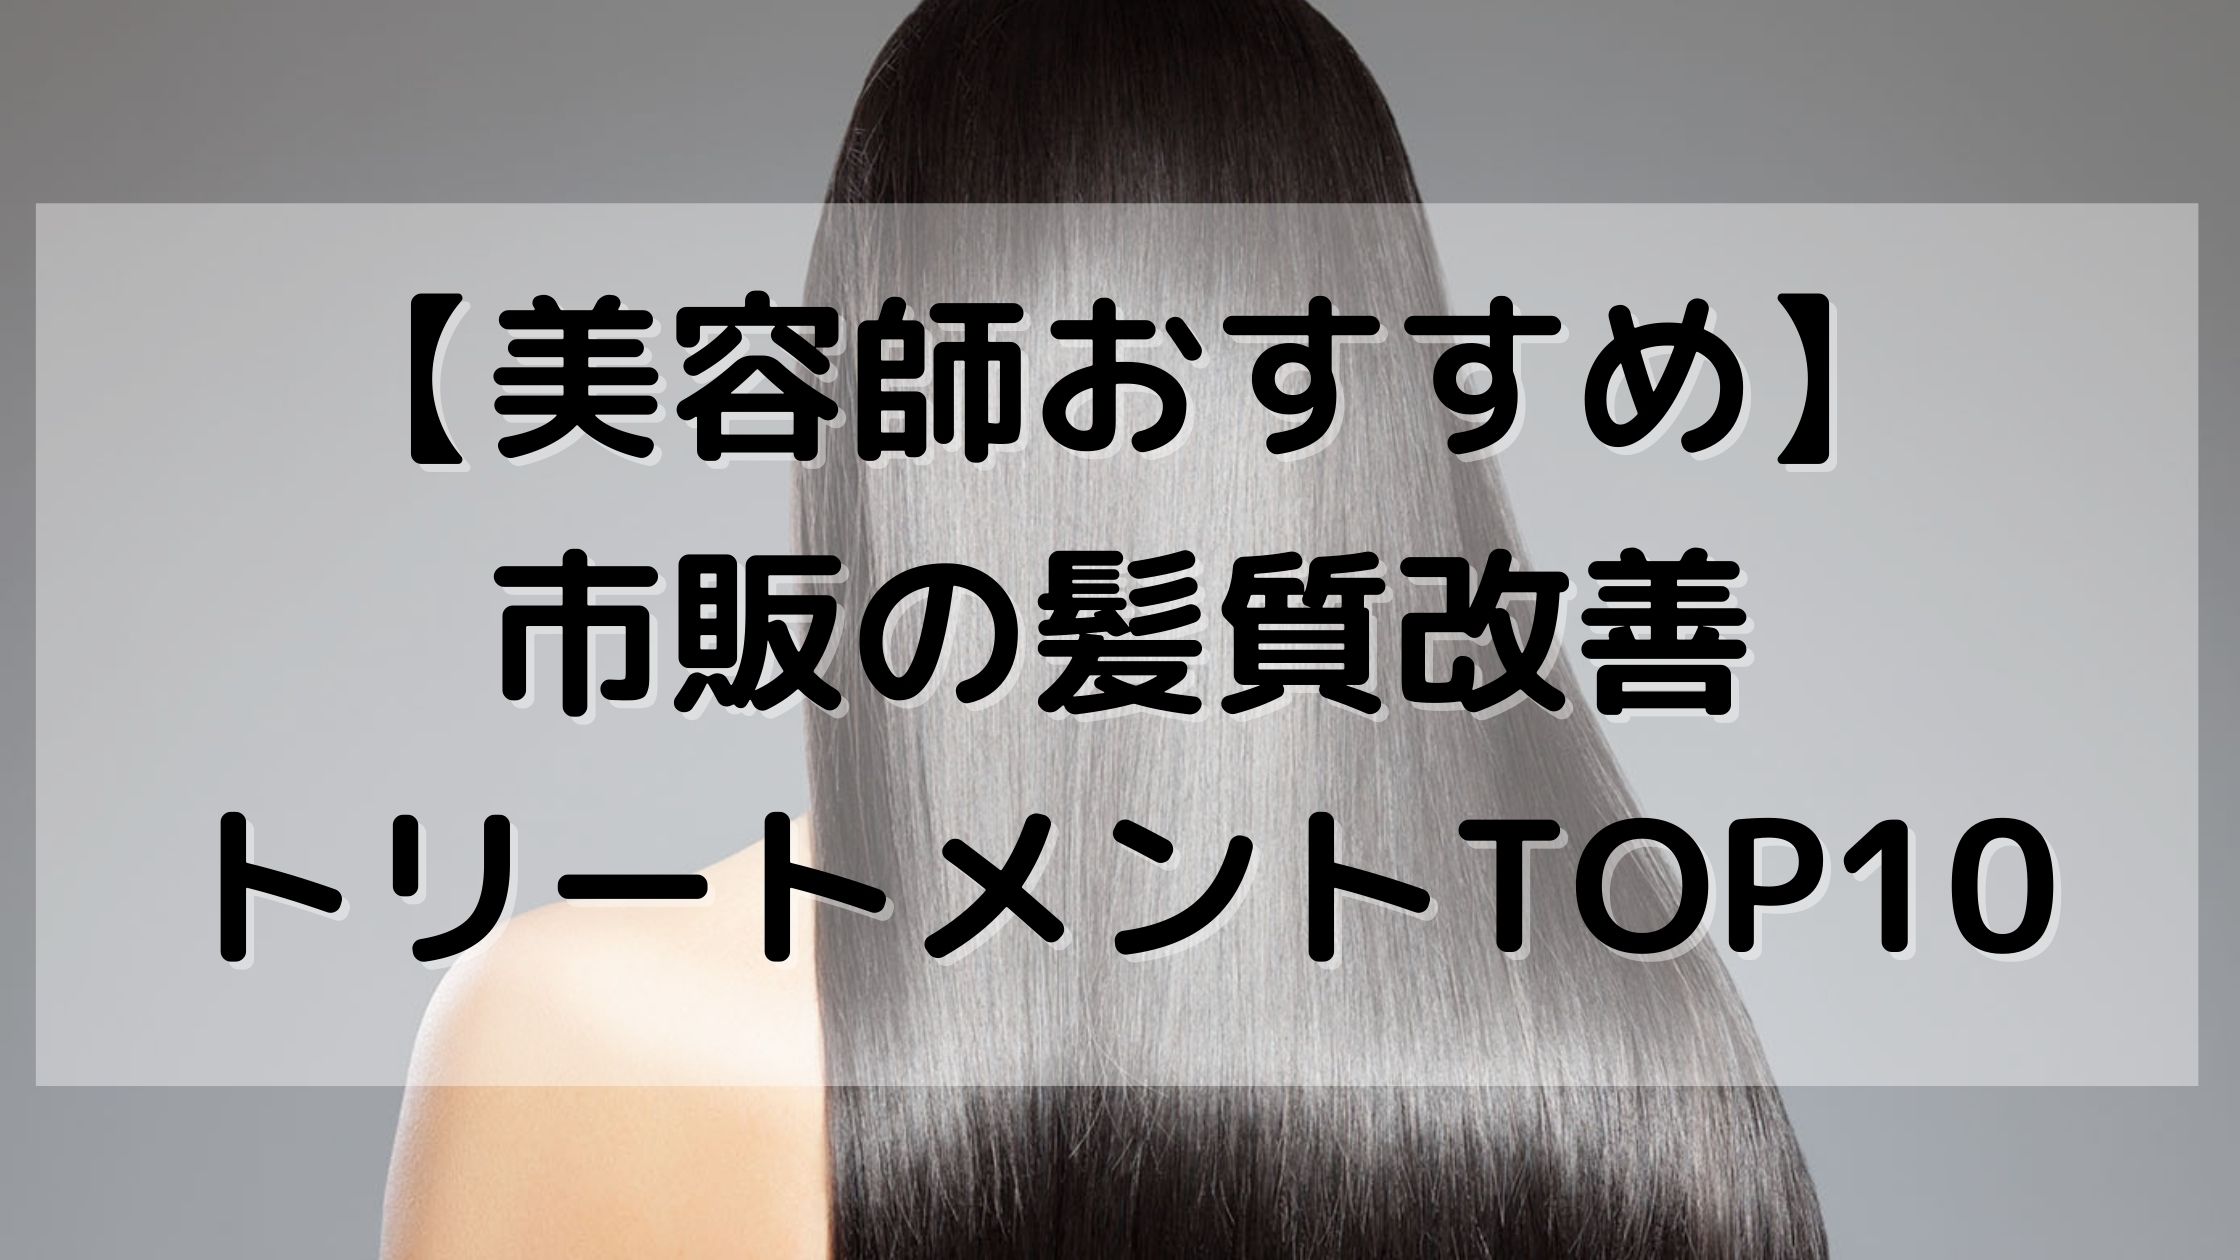 美容師おすすめ 市販の髪質改善トリートメントtop10 中村美髪研究所